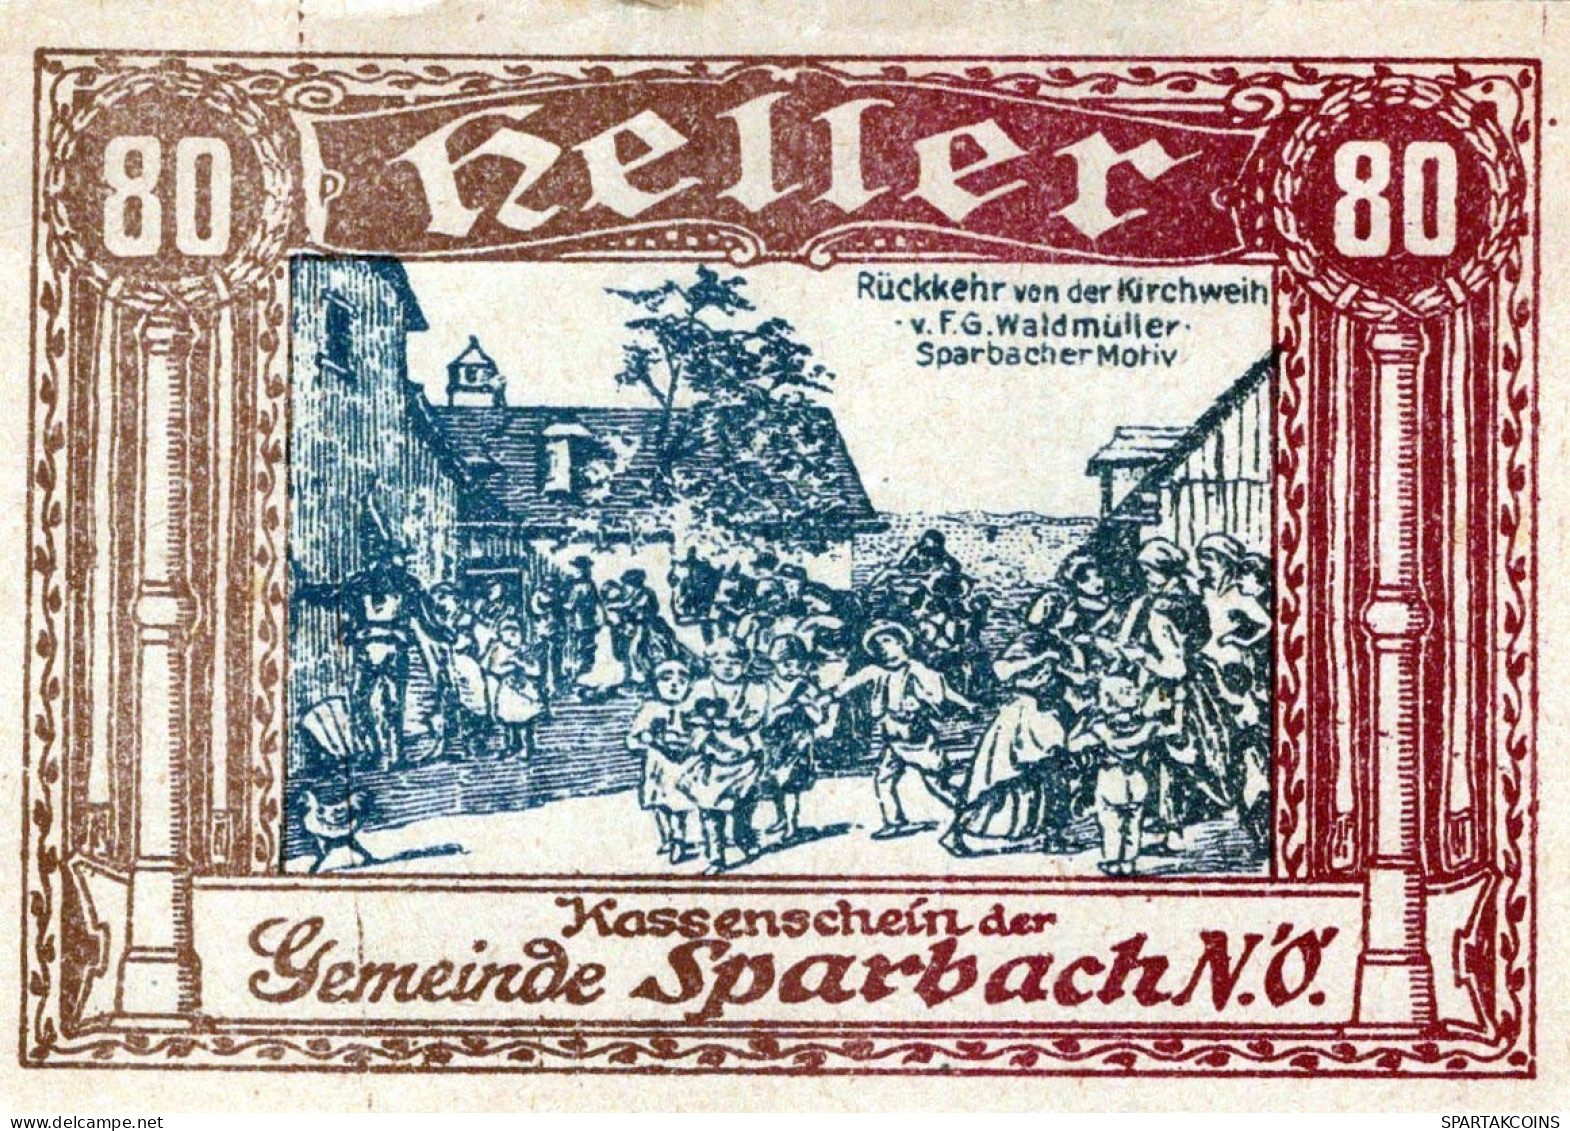 80 HELLER Stadt Sparbach Niedrigeren Österreich Notgeld Papiergeld Banknote #PG996 - [11] Local Banknote Issues